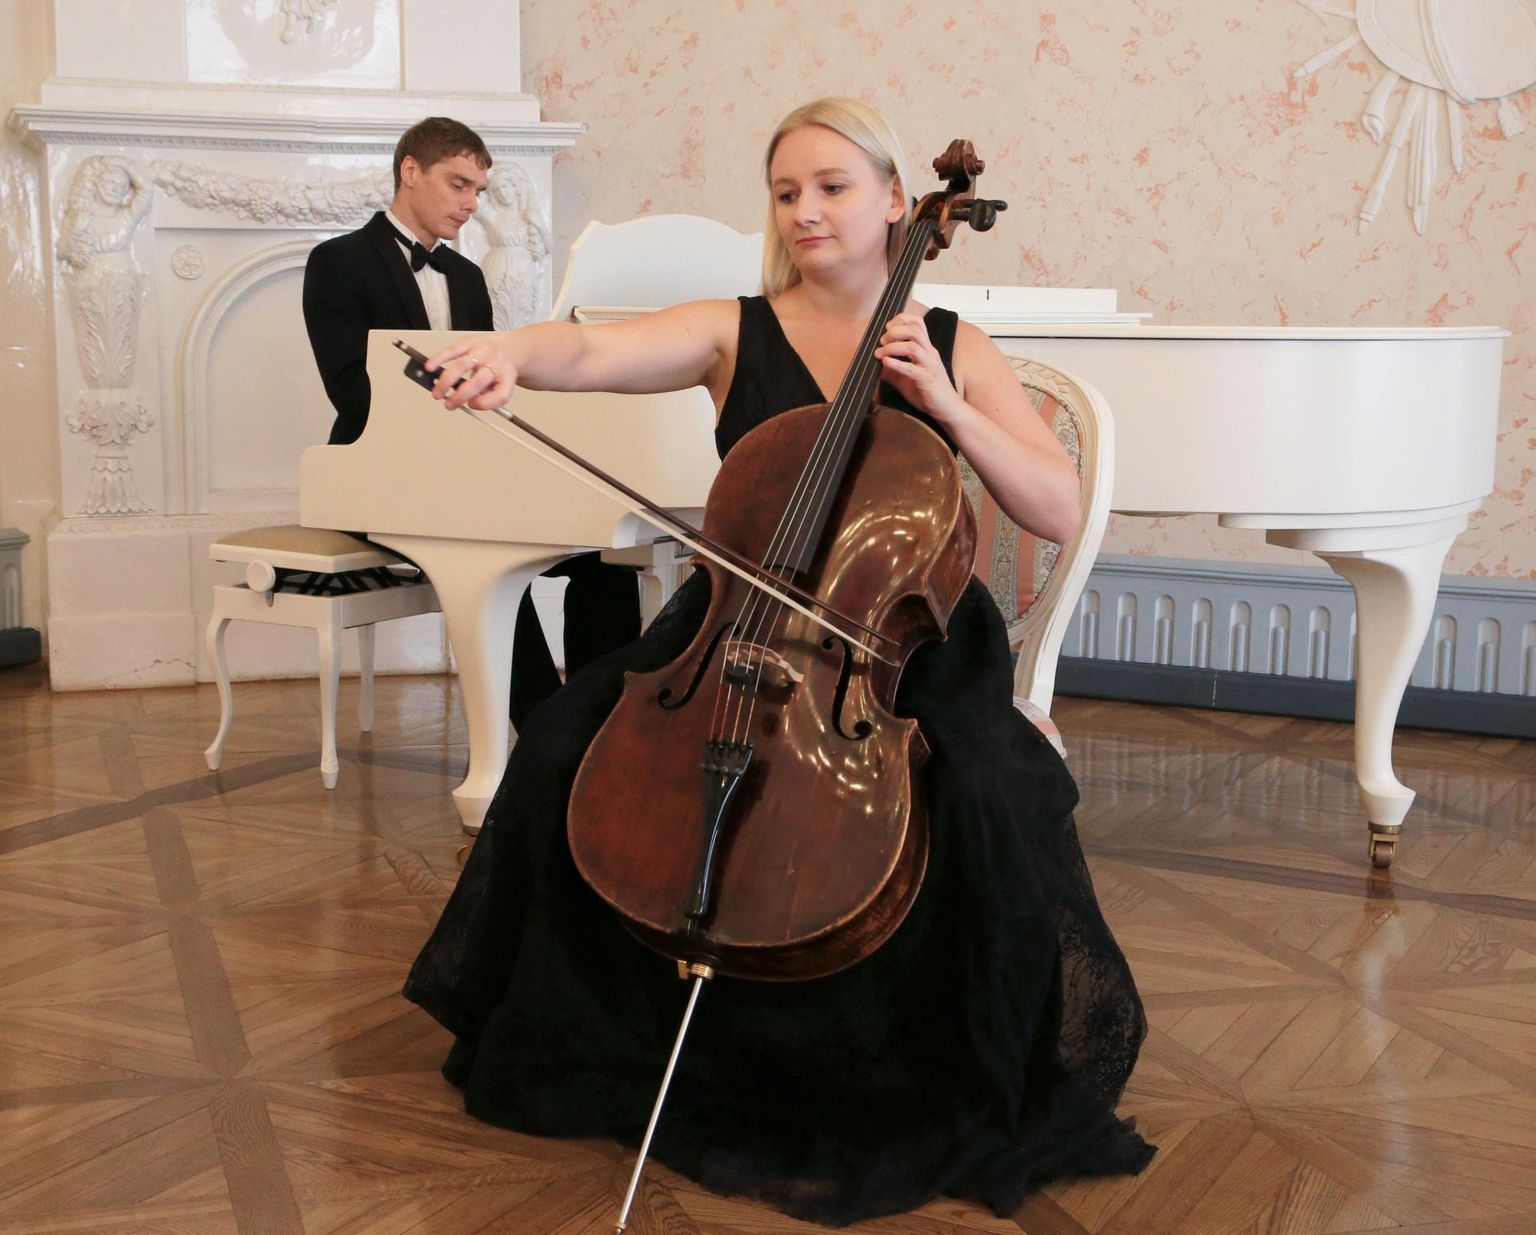 Tšellist Olja Raudonen ja pianist Margus Riimaa ootavad publikut 1. oktoobril Tartu linnamuuseumi saali, mis on nende sõnul Tartu kõige kaunim kontserdipaik.